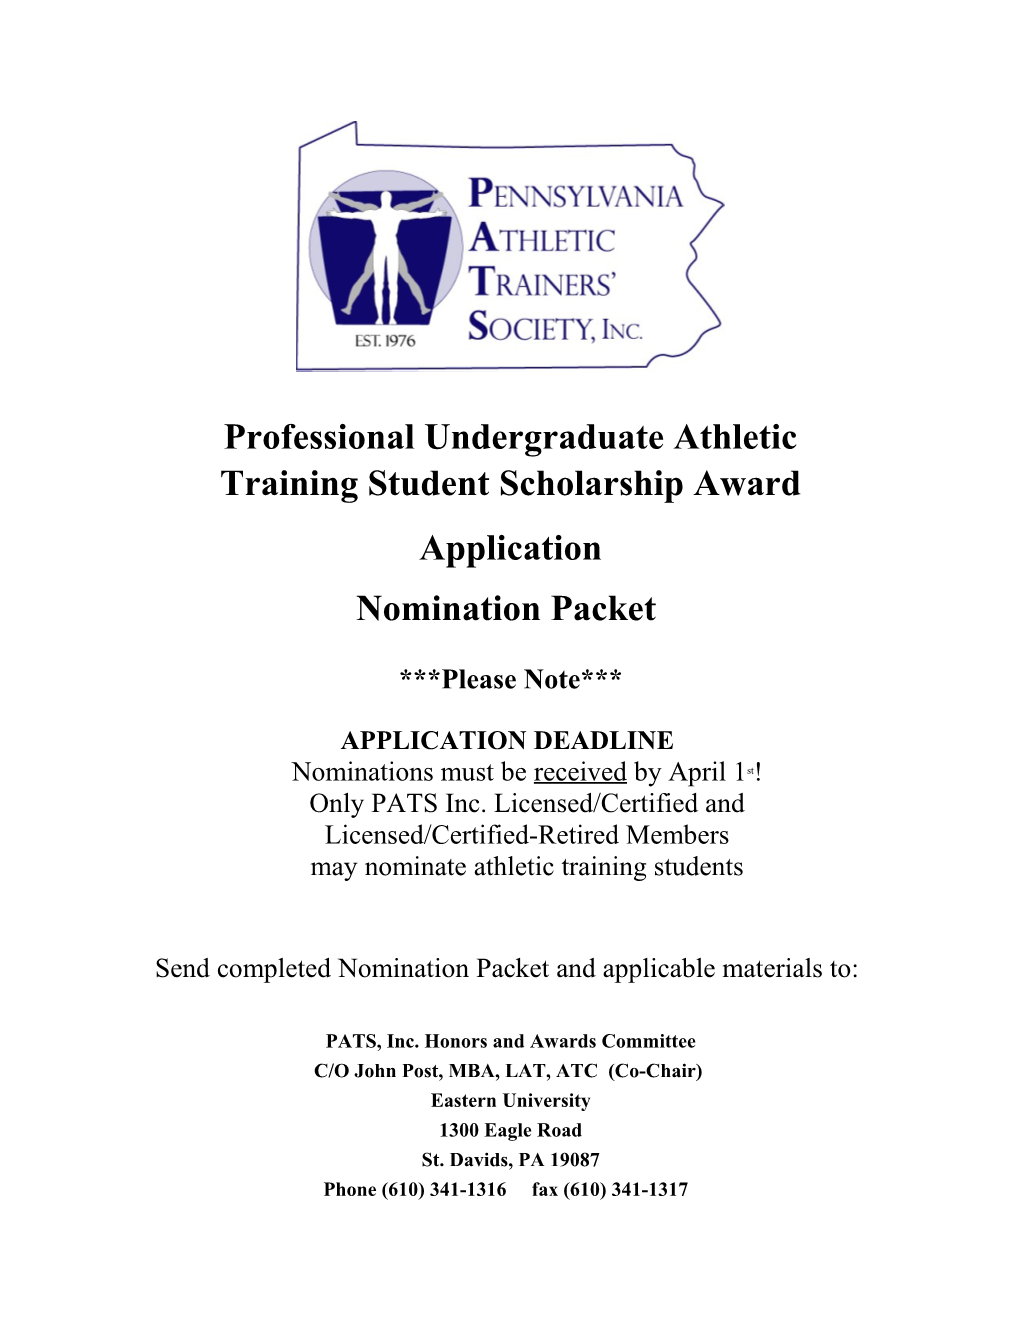 Professional Undergraduate Athletic Training Student Scholarship Award